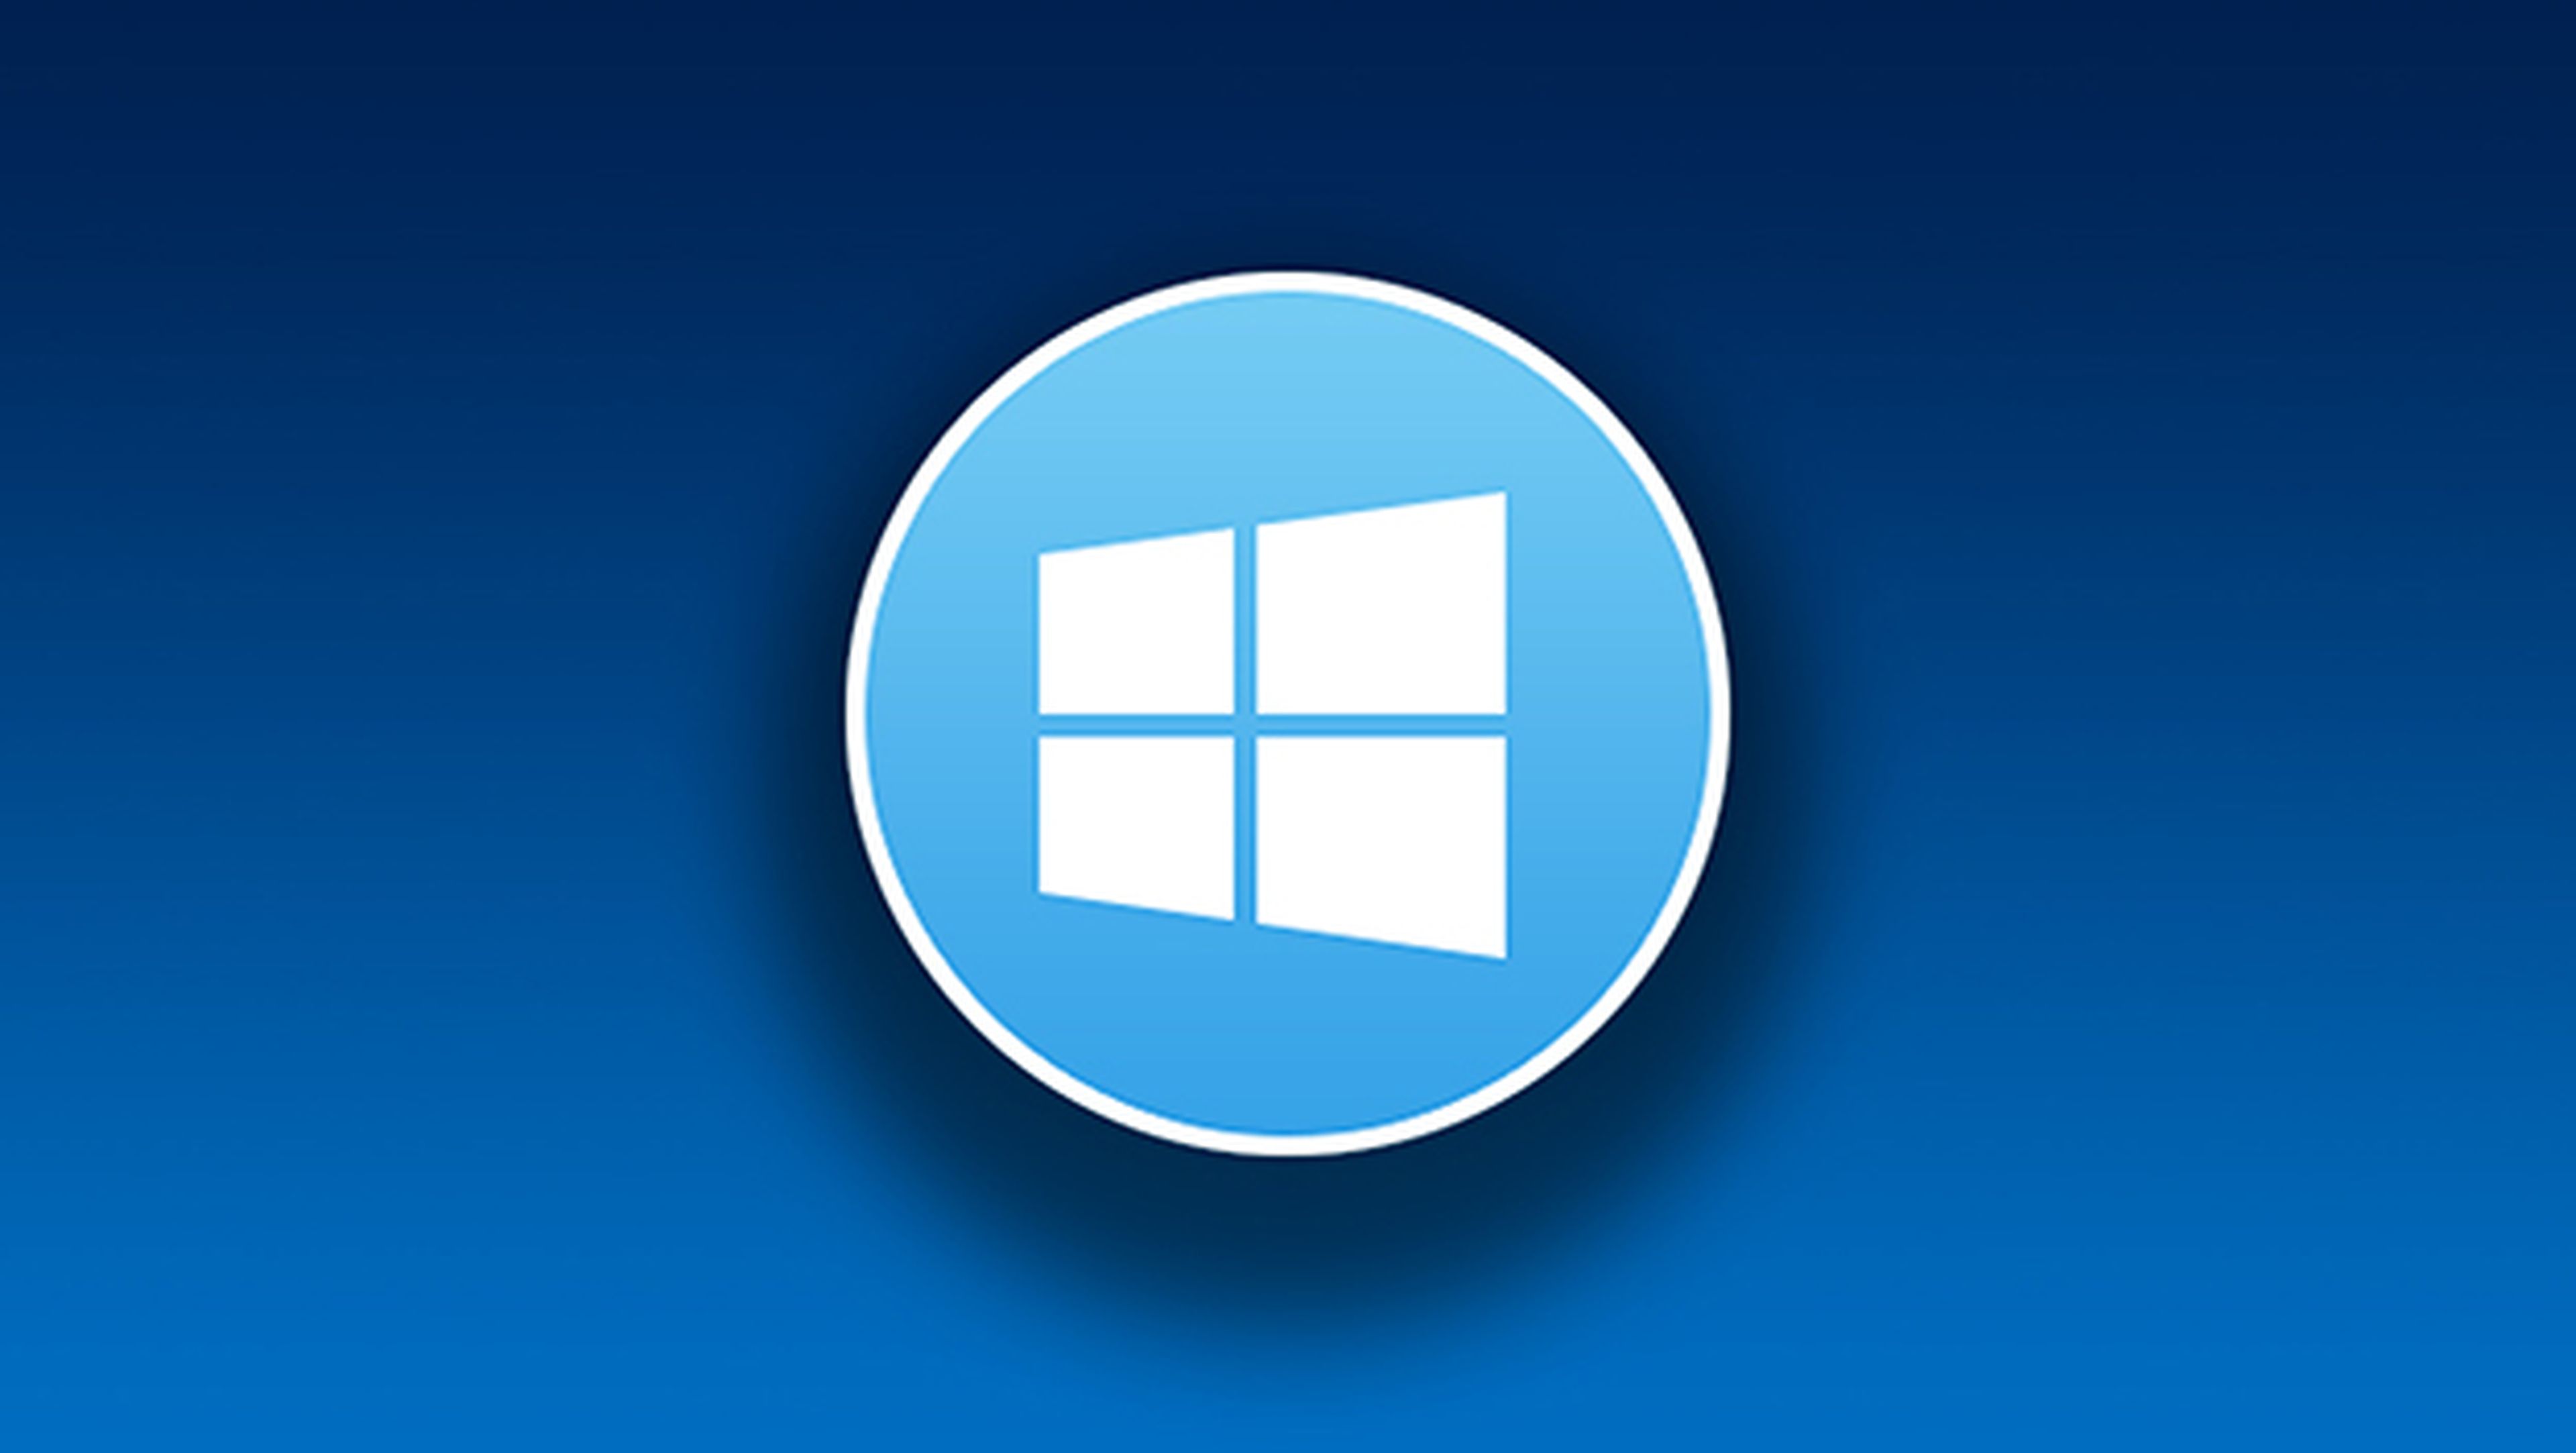 Actualización Windows 10